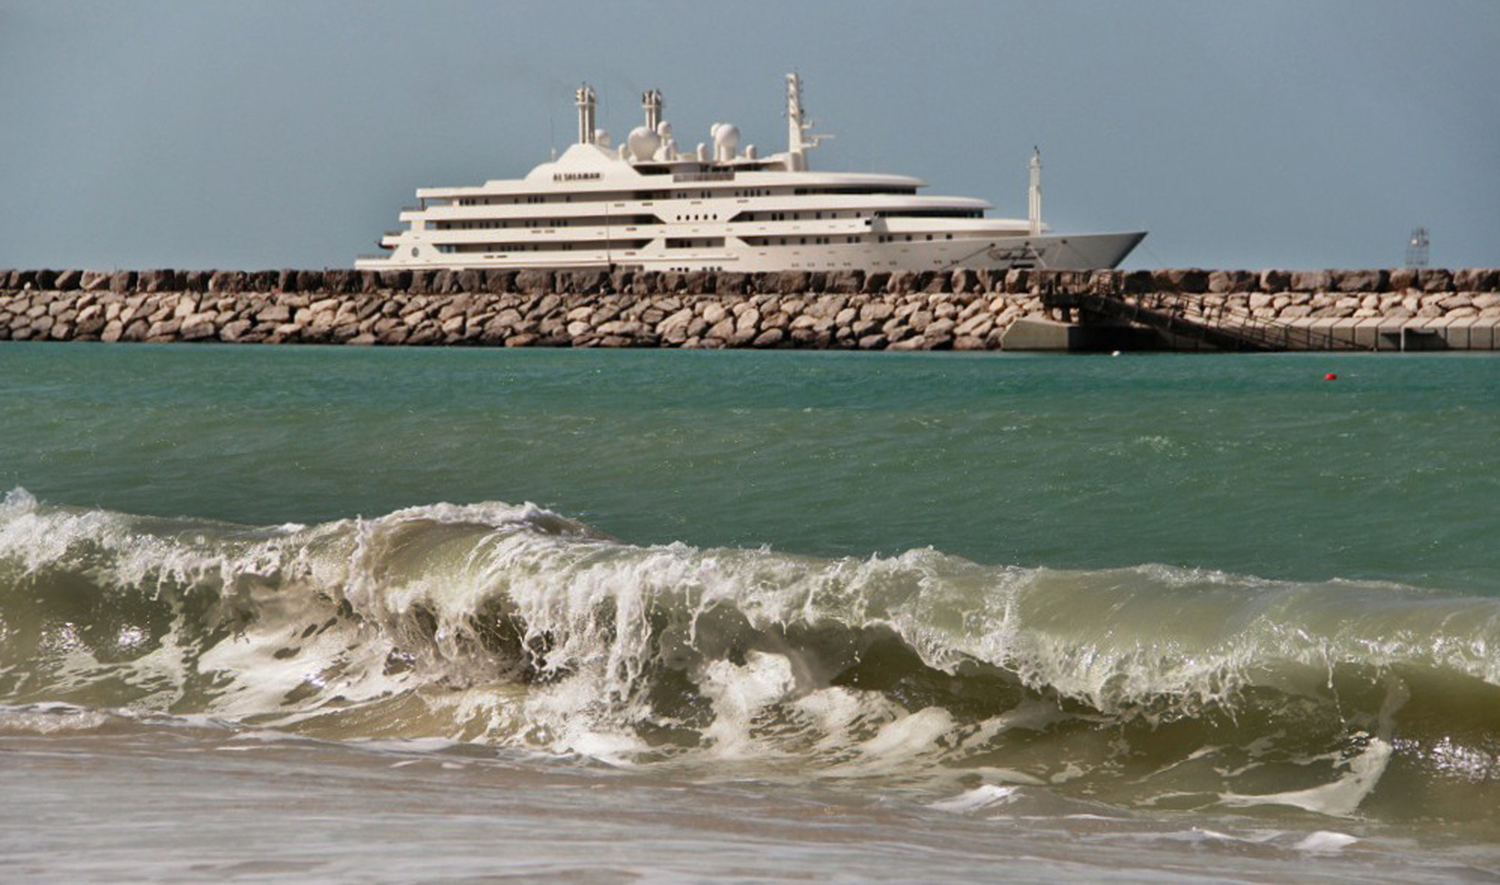 Волна на фоне яхты Принца Крови "AL SALAMAH", ОАЭ